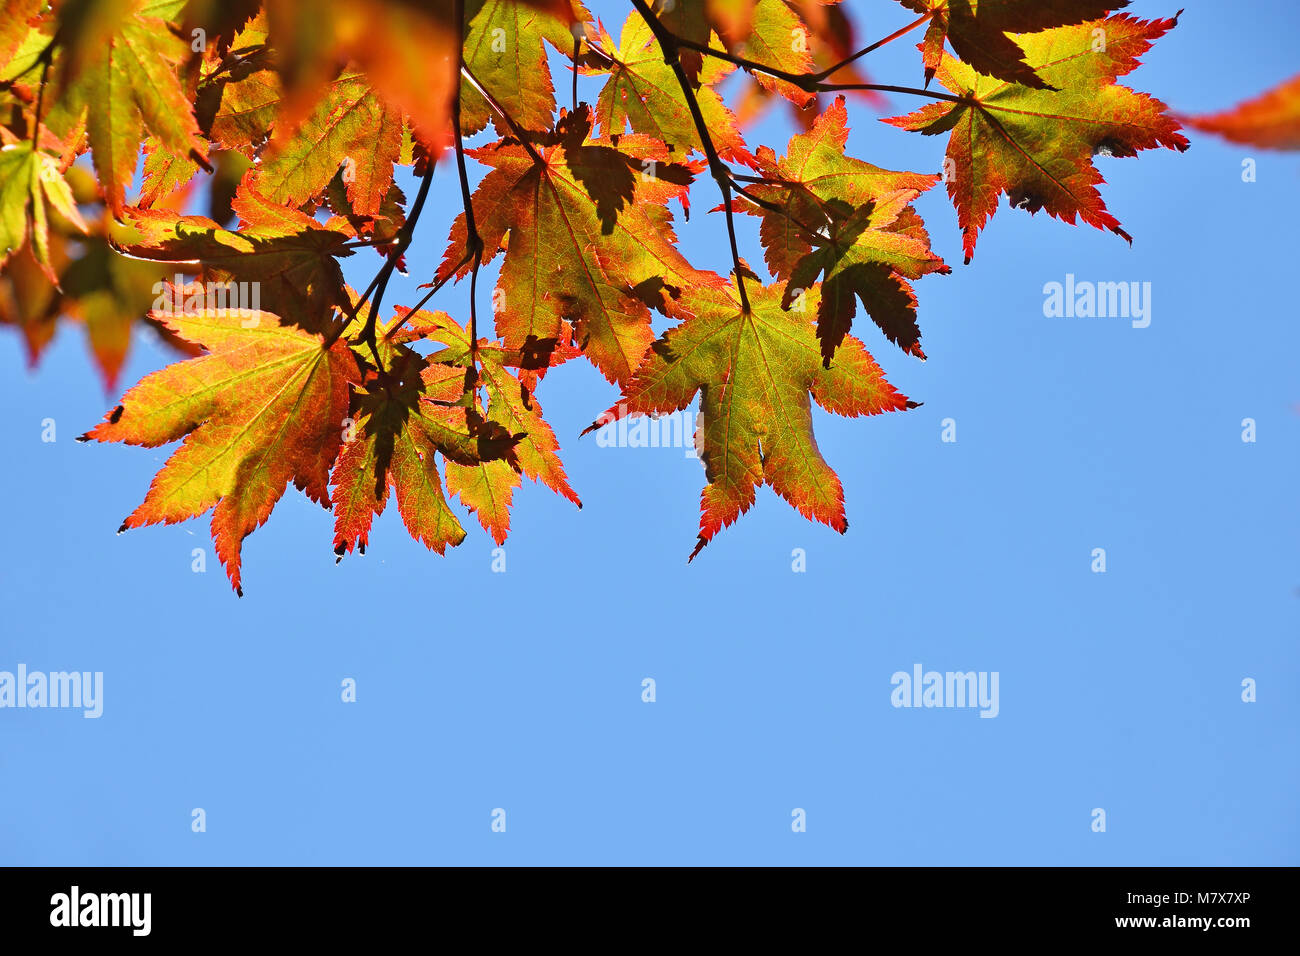 Schließen bis Herbst Farben von rot, orange und gelb Japanischen Acer oder Ahorn Blätter über klaren blauen Himmel, Low Angle View Stockfoto